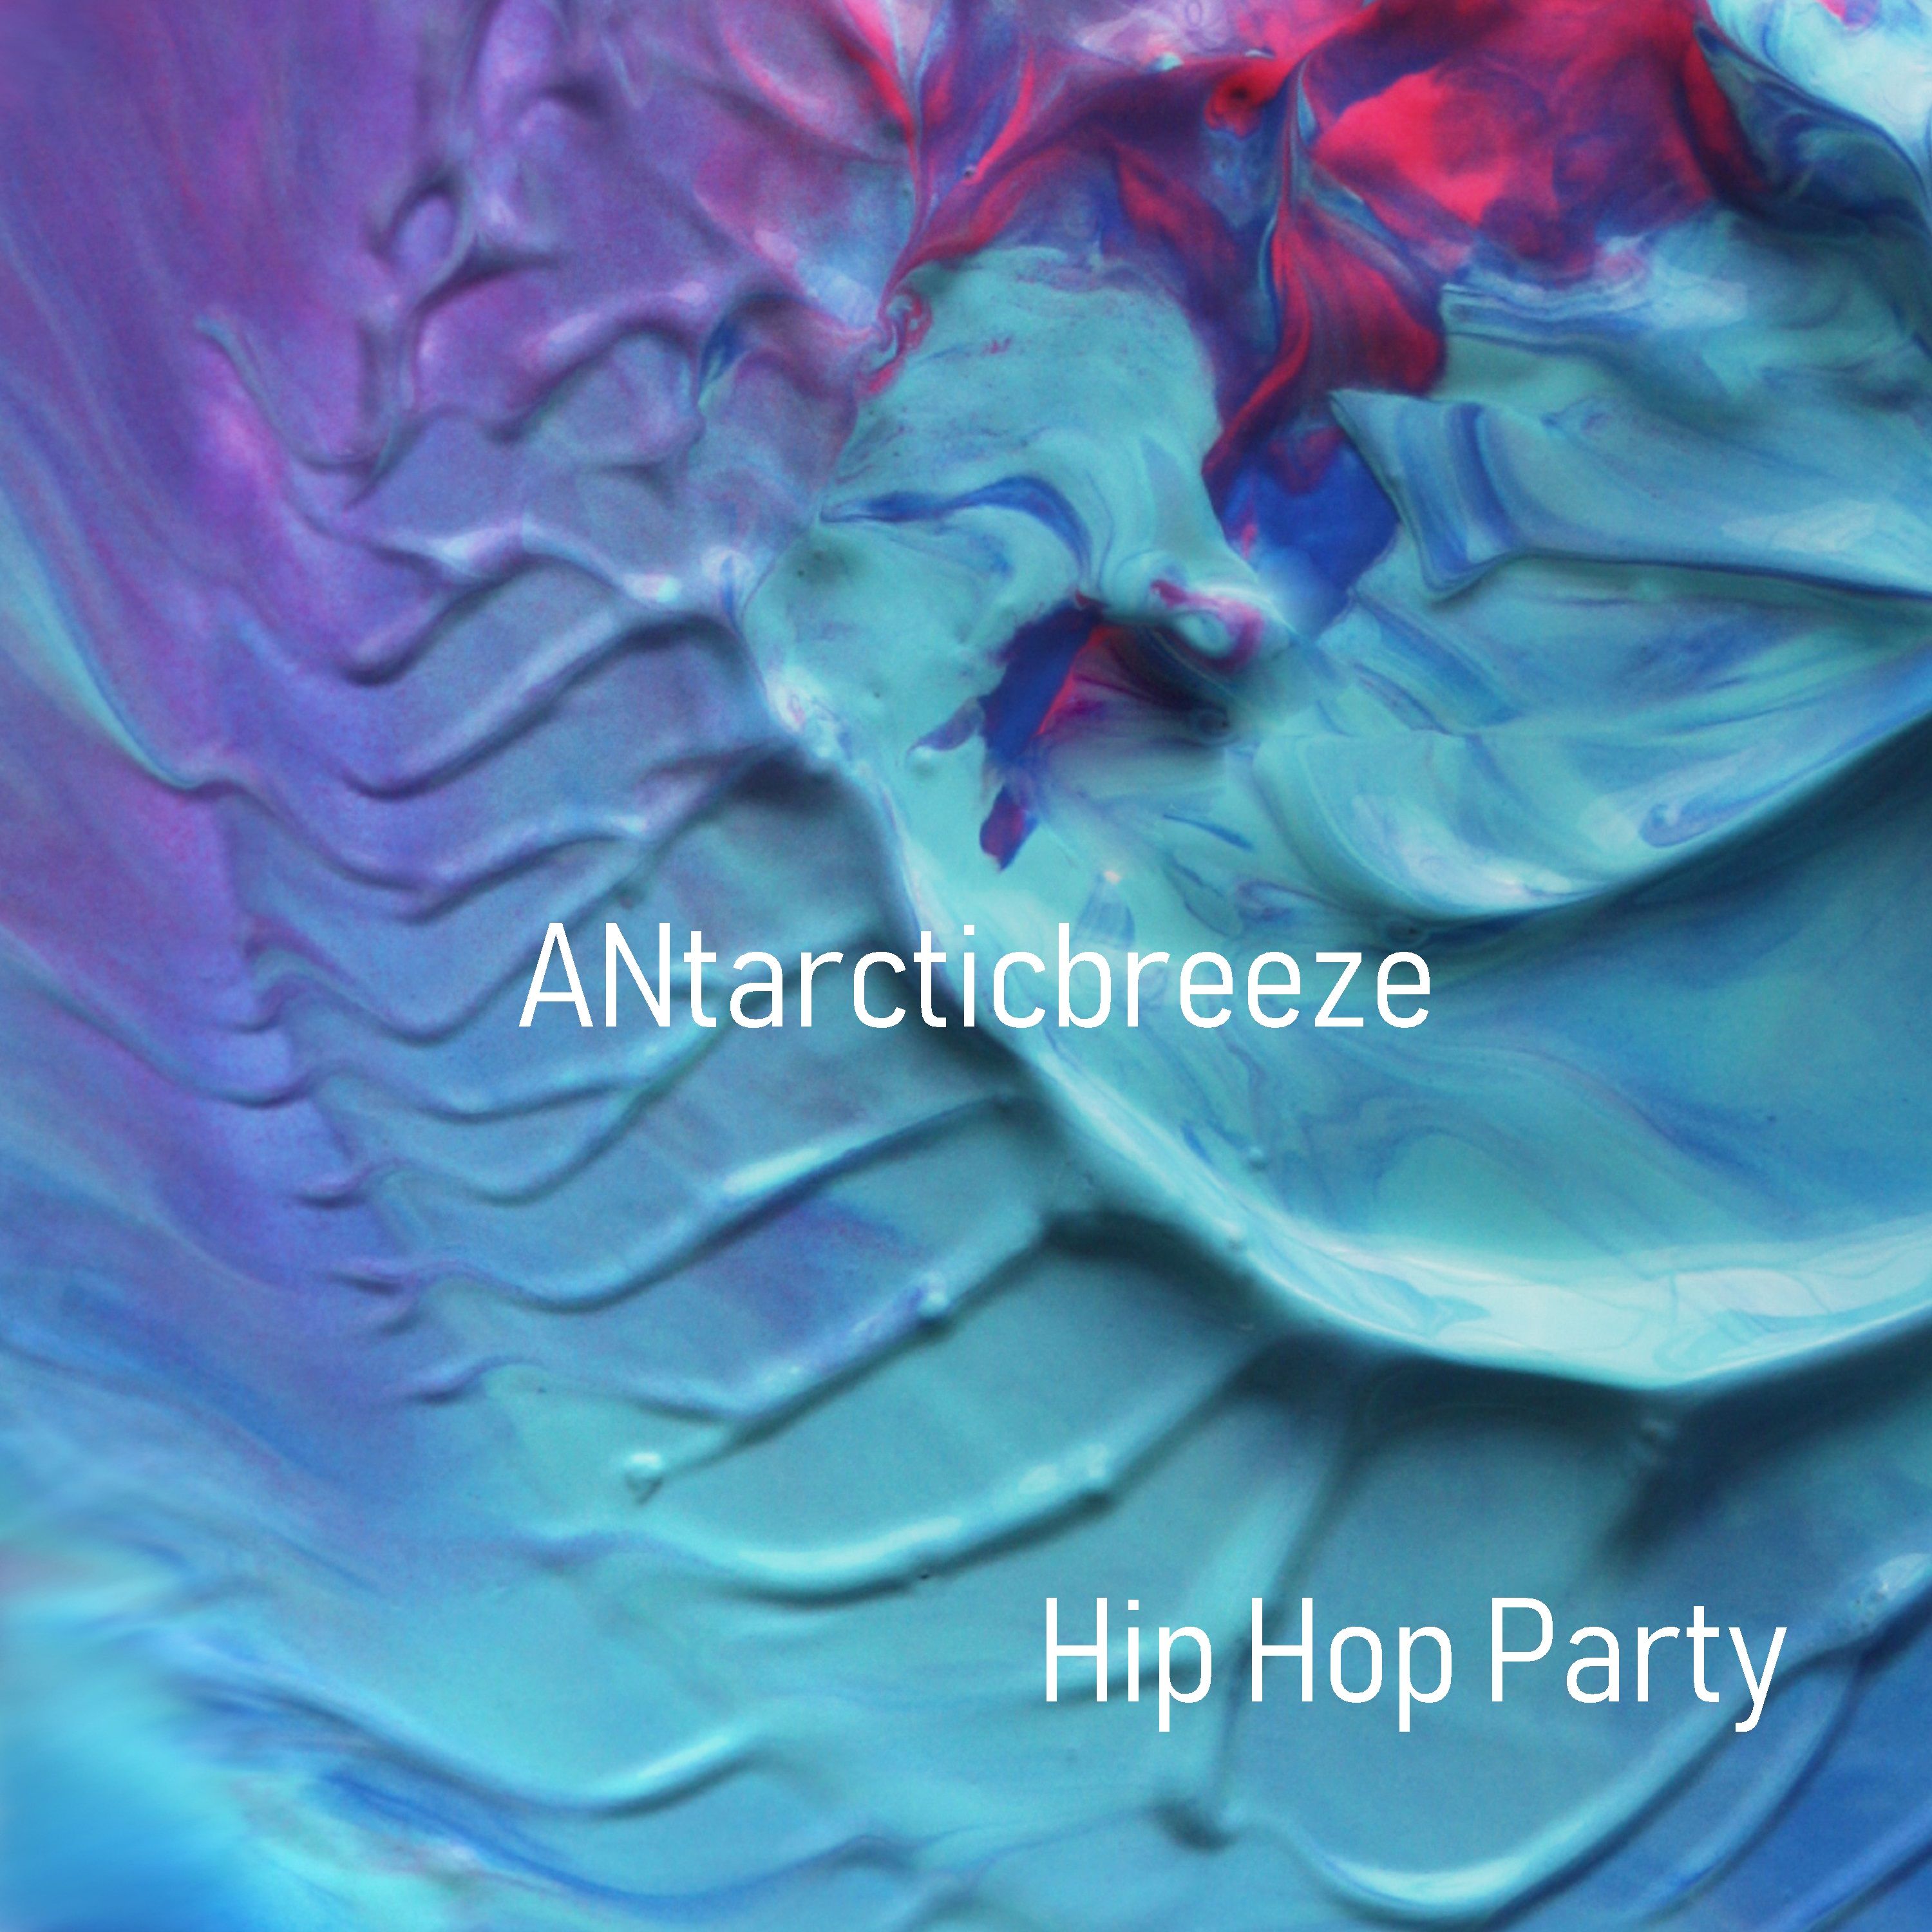 Descargar Hip Hop Party - Positive (Unlimit Use Music) by ANtarcticbreeze